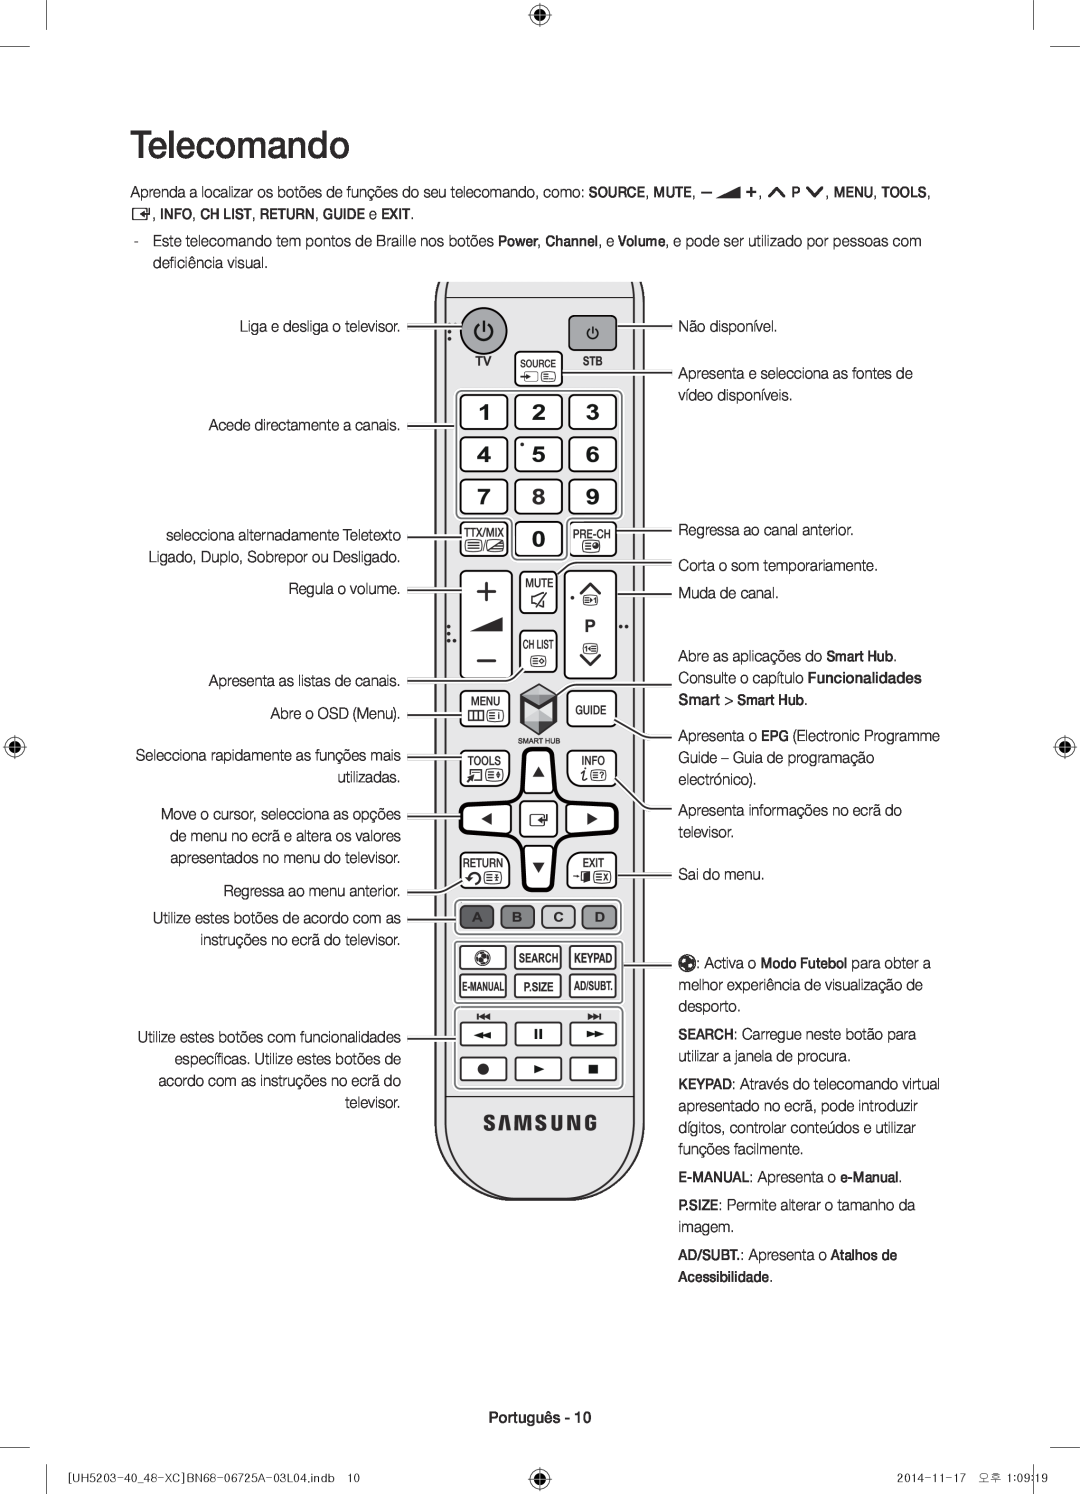 Samsung UE40H5203AWXXC manual Telecomando, Move o cursor, selecciona as opções, Utilize estes botões de acordo com as 